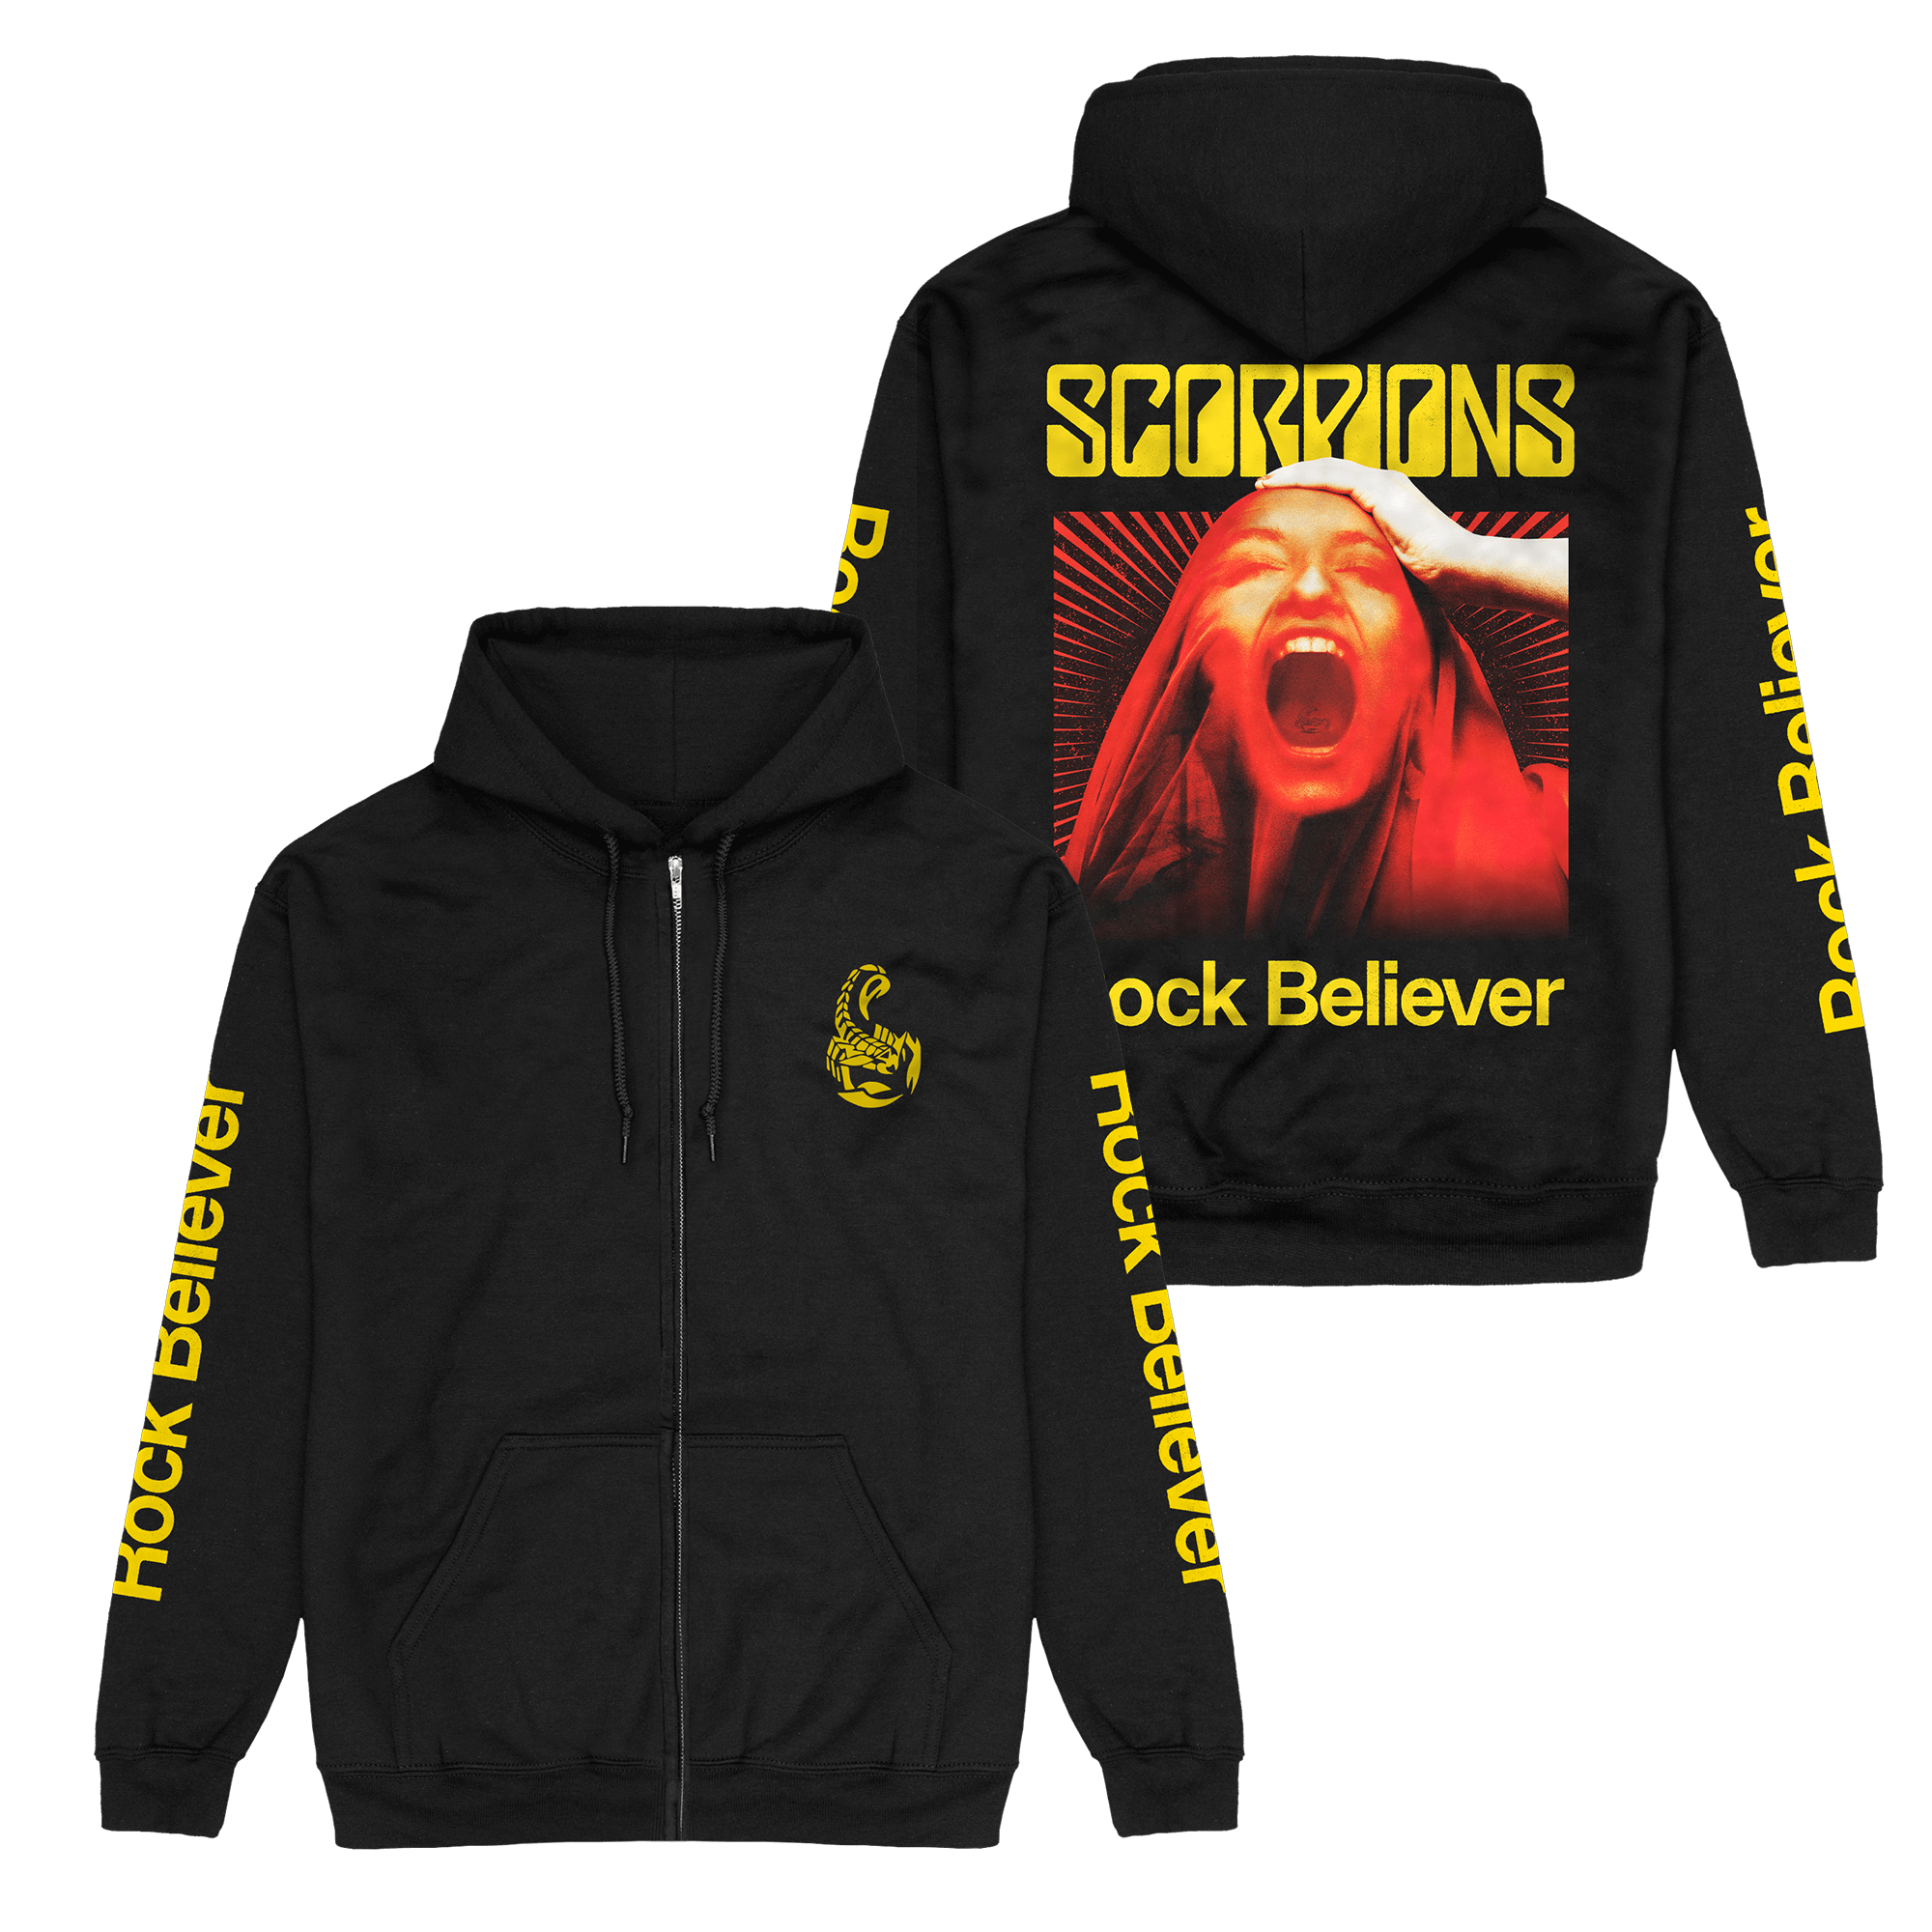 Rock Believer Zip Up Hoodie Scorpions Official Store